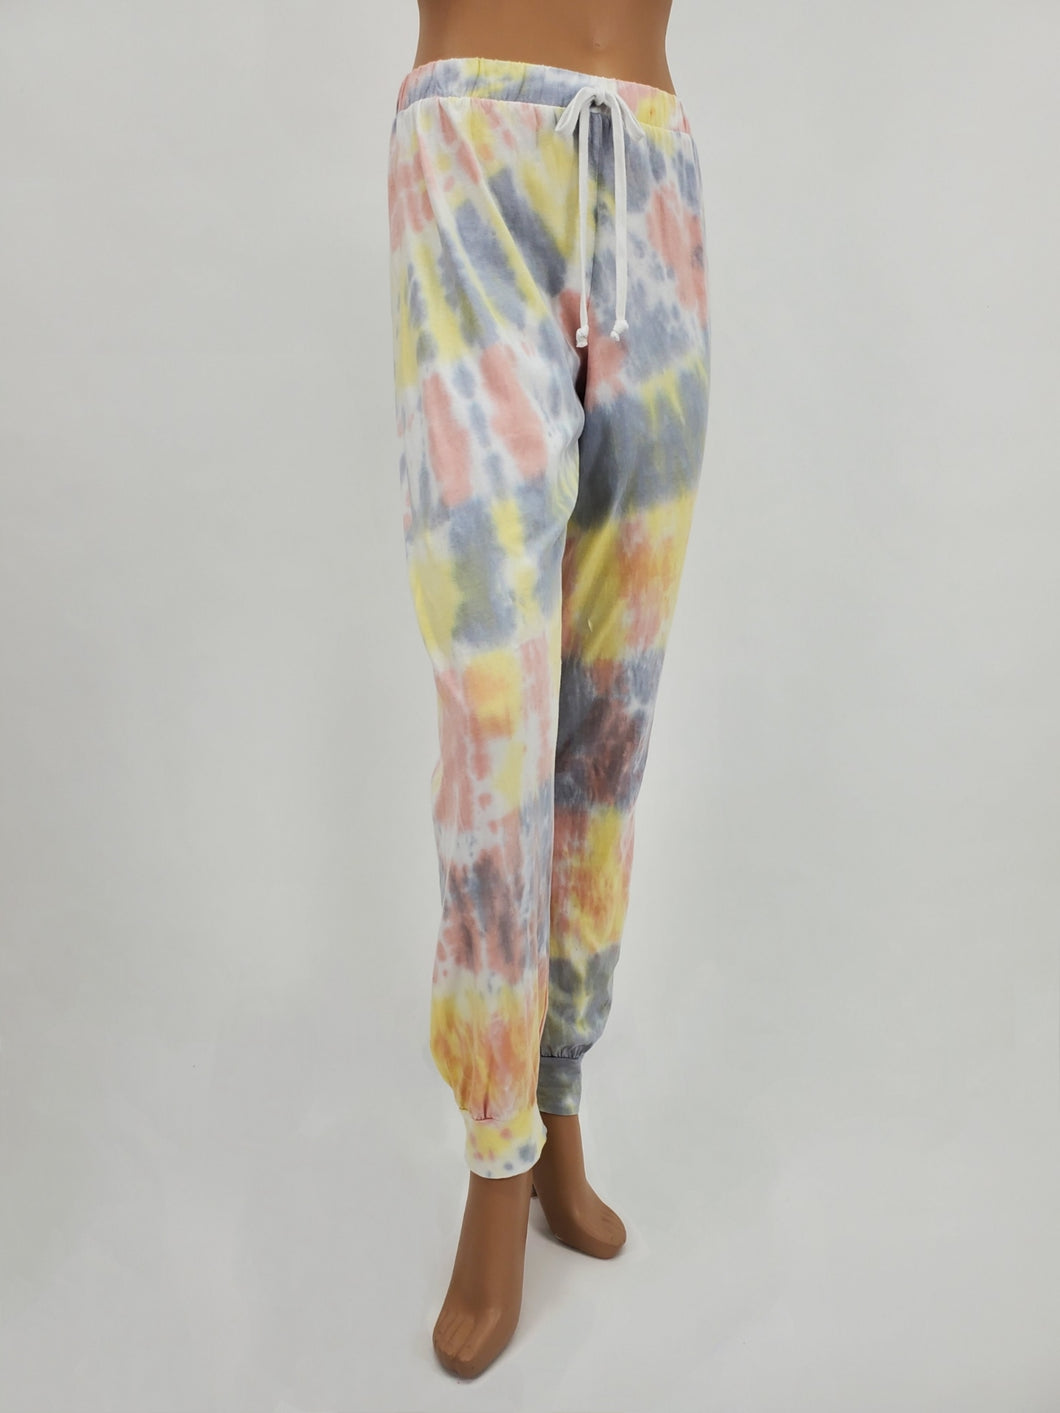 Tie-Dye Jogger Pants (Gray/Yellow/Mauve)